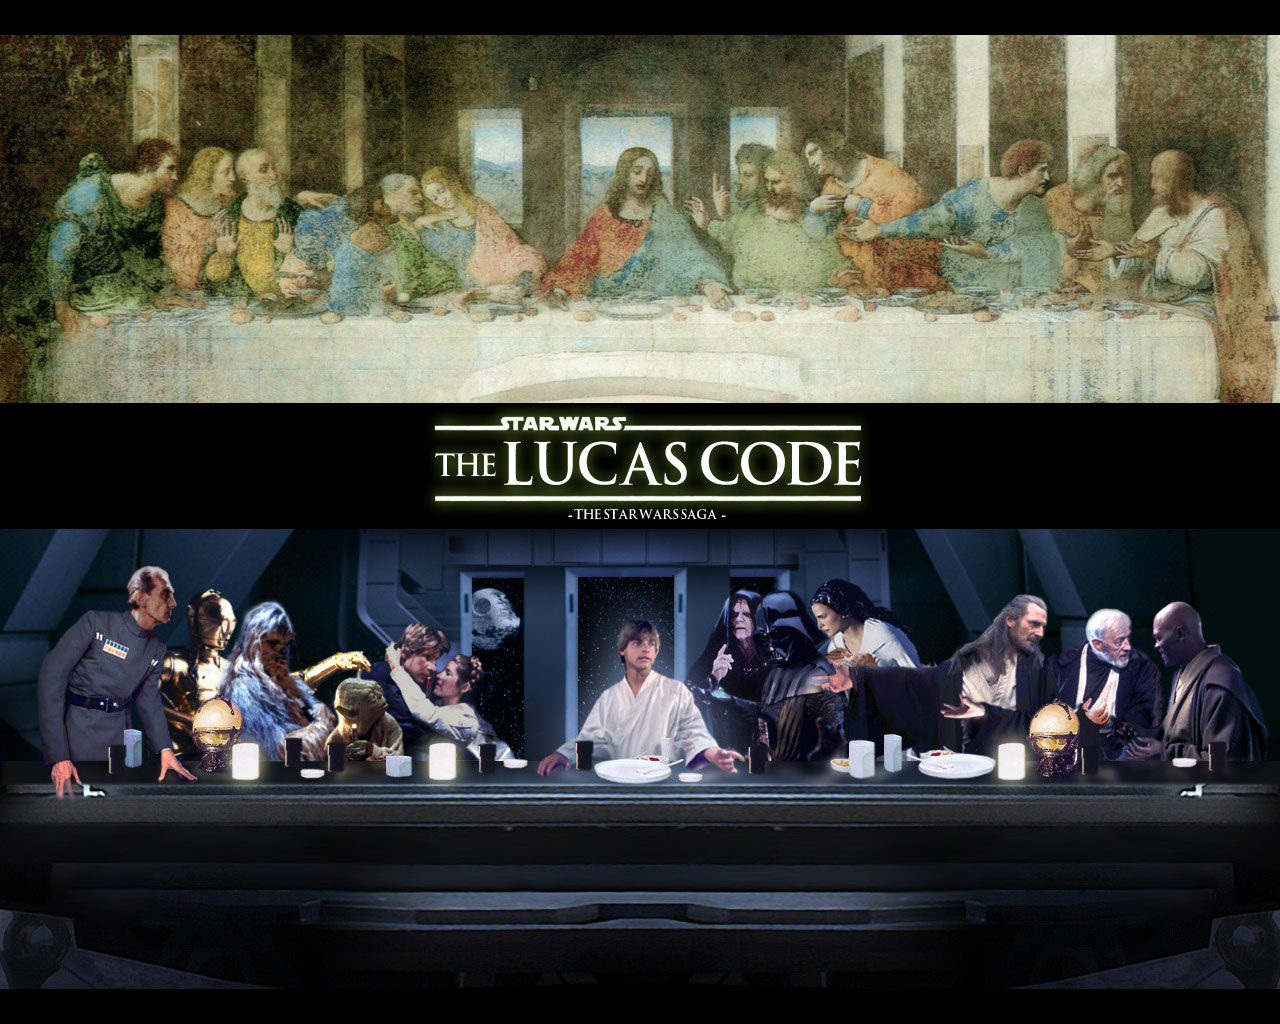 The Lucas Code